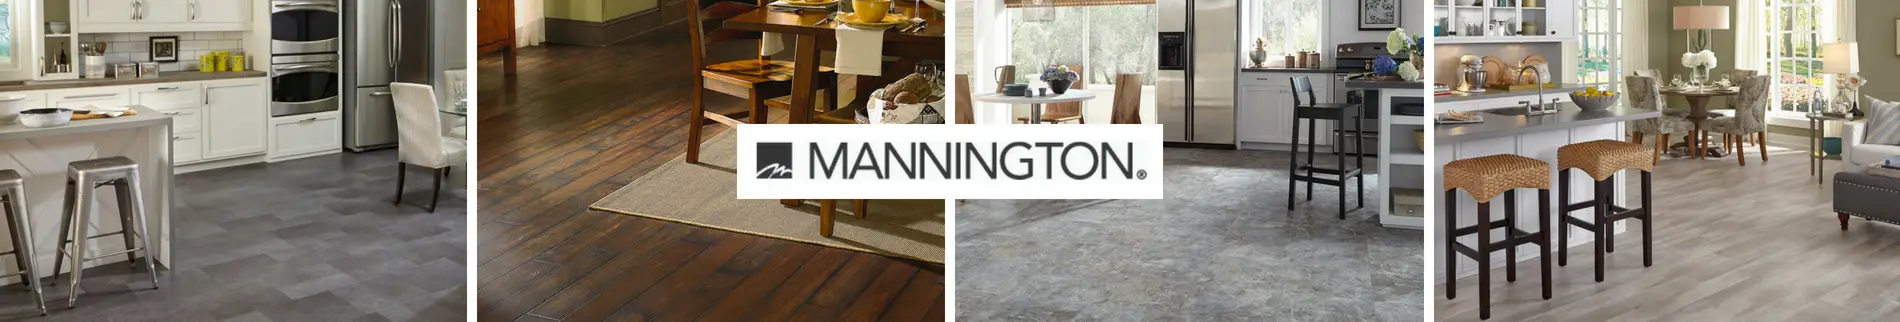 mannington Flooring Room Scenes